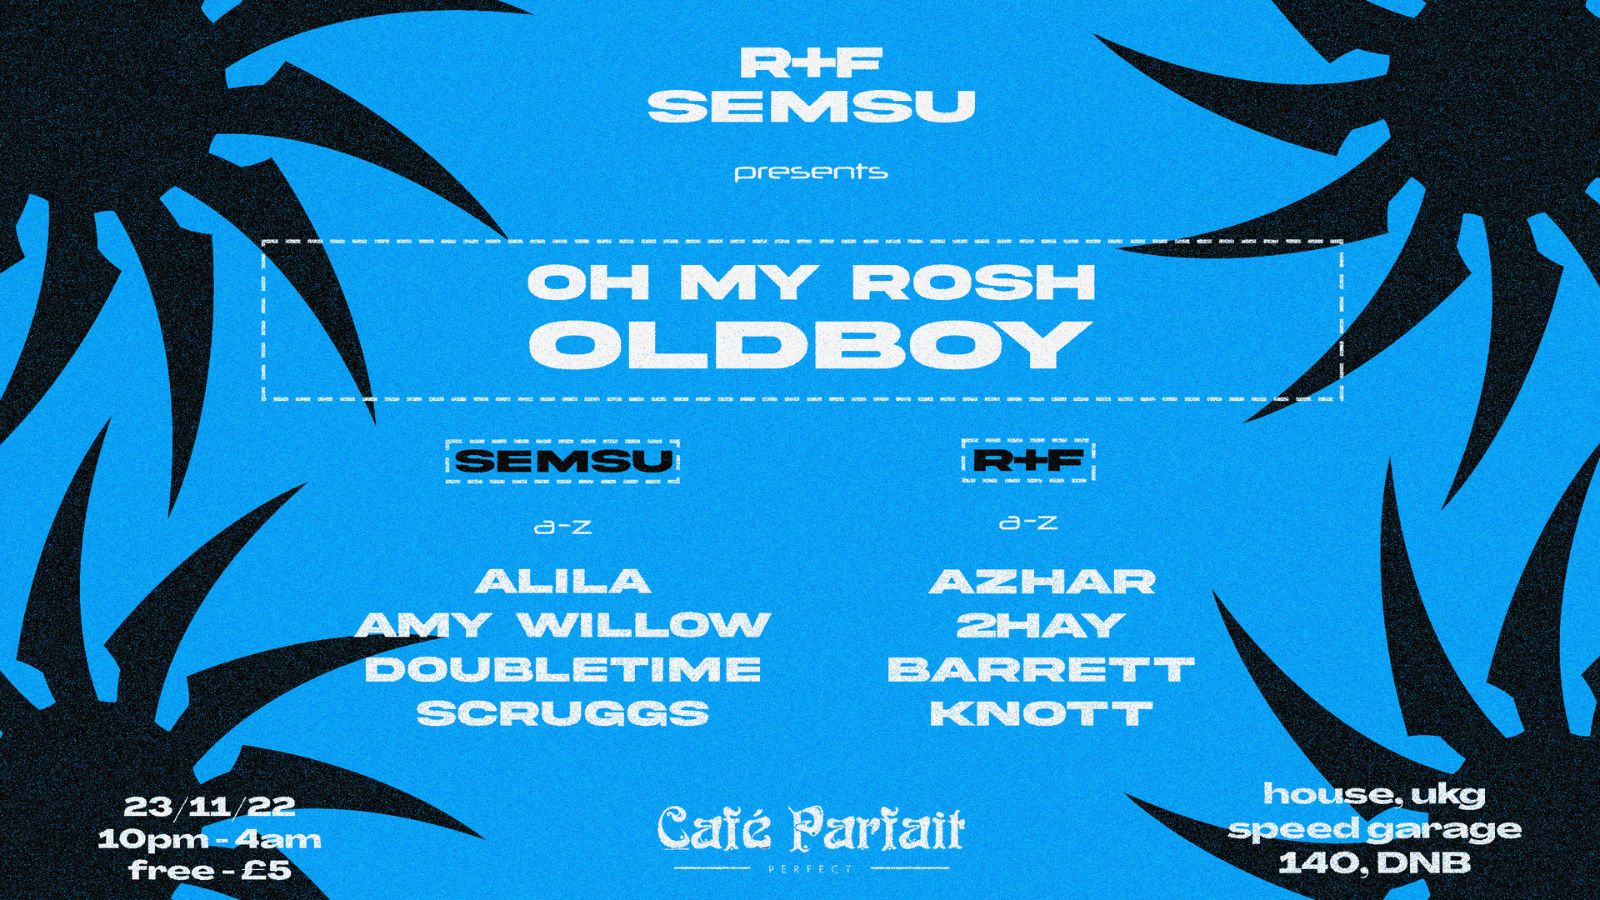 R+F X Semsu Presents: OH MY ROSH & OLDBOY // House, Garage, Speed Garage, 140 & DnB